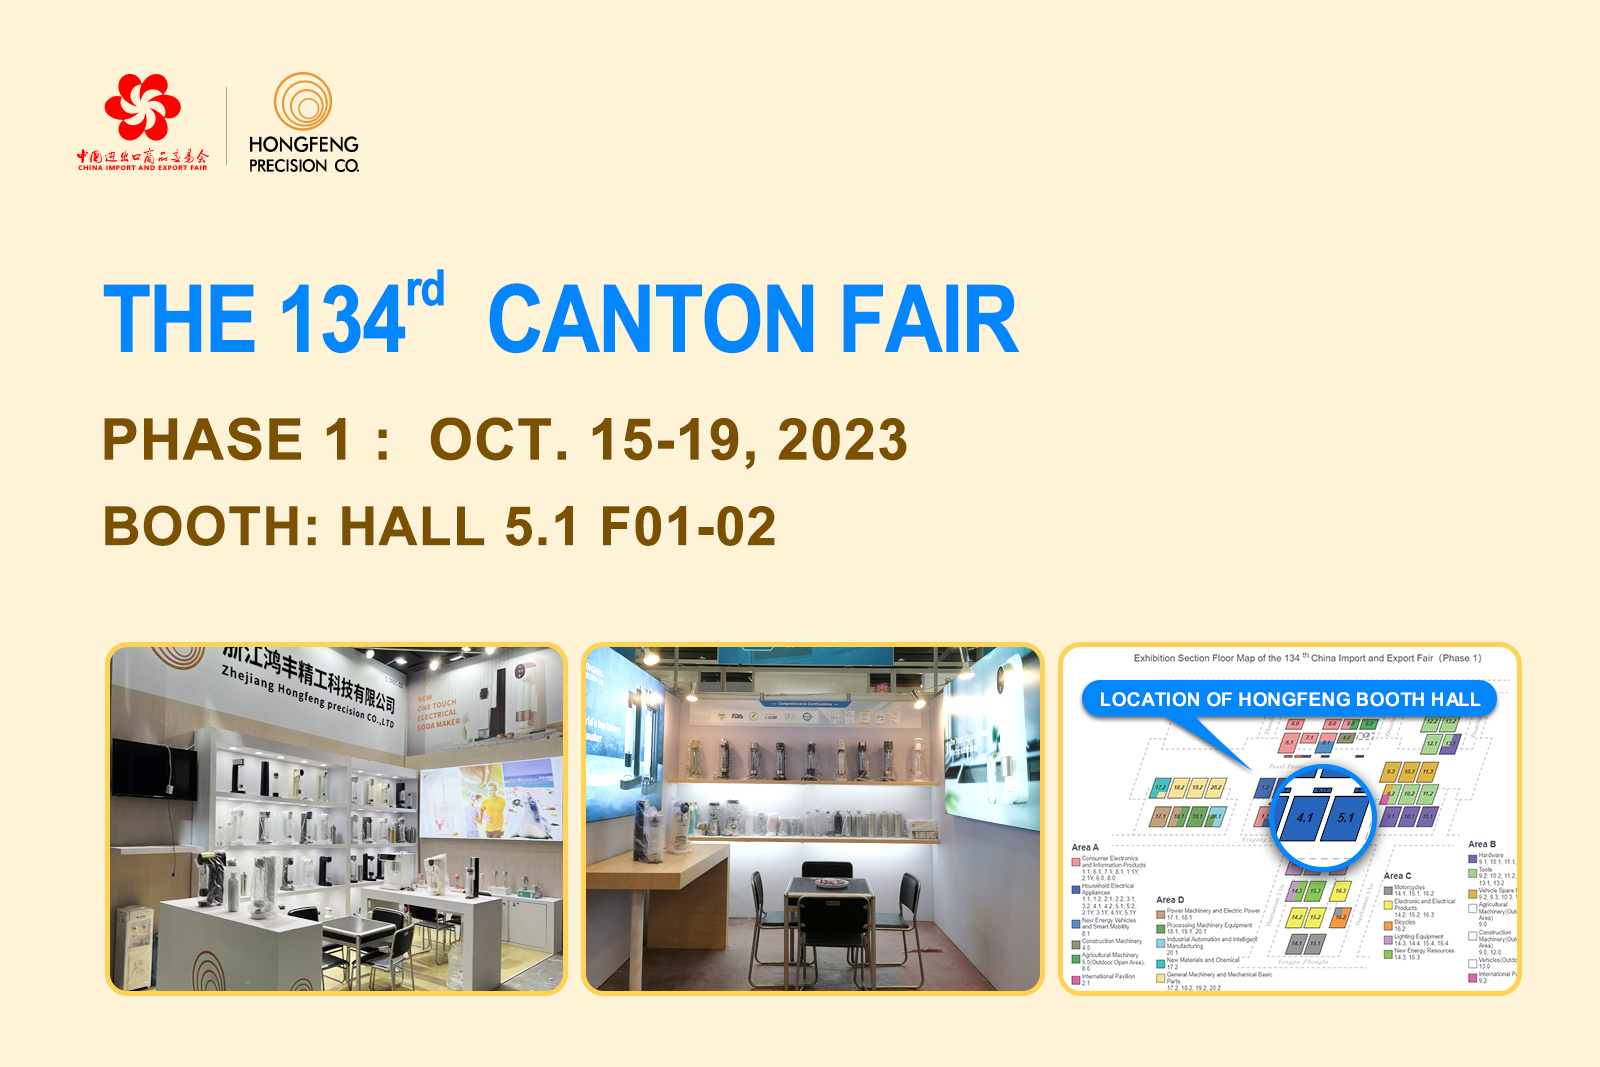 Zhejiang Hongfeng Precision Co., Ltd. trae electrodomésticos innovadores a la Feria de Cantón 2023